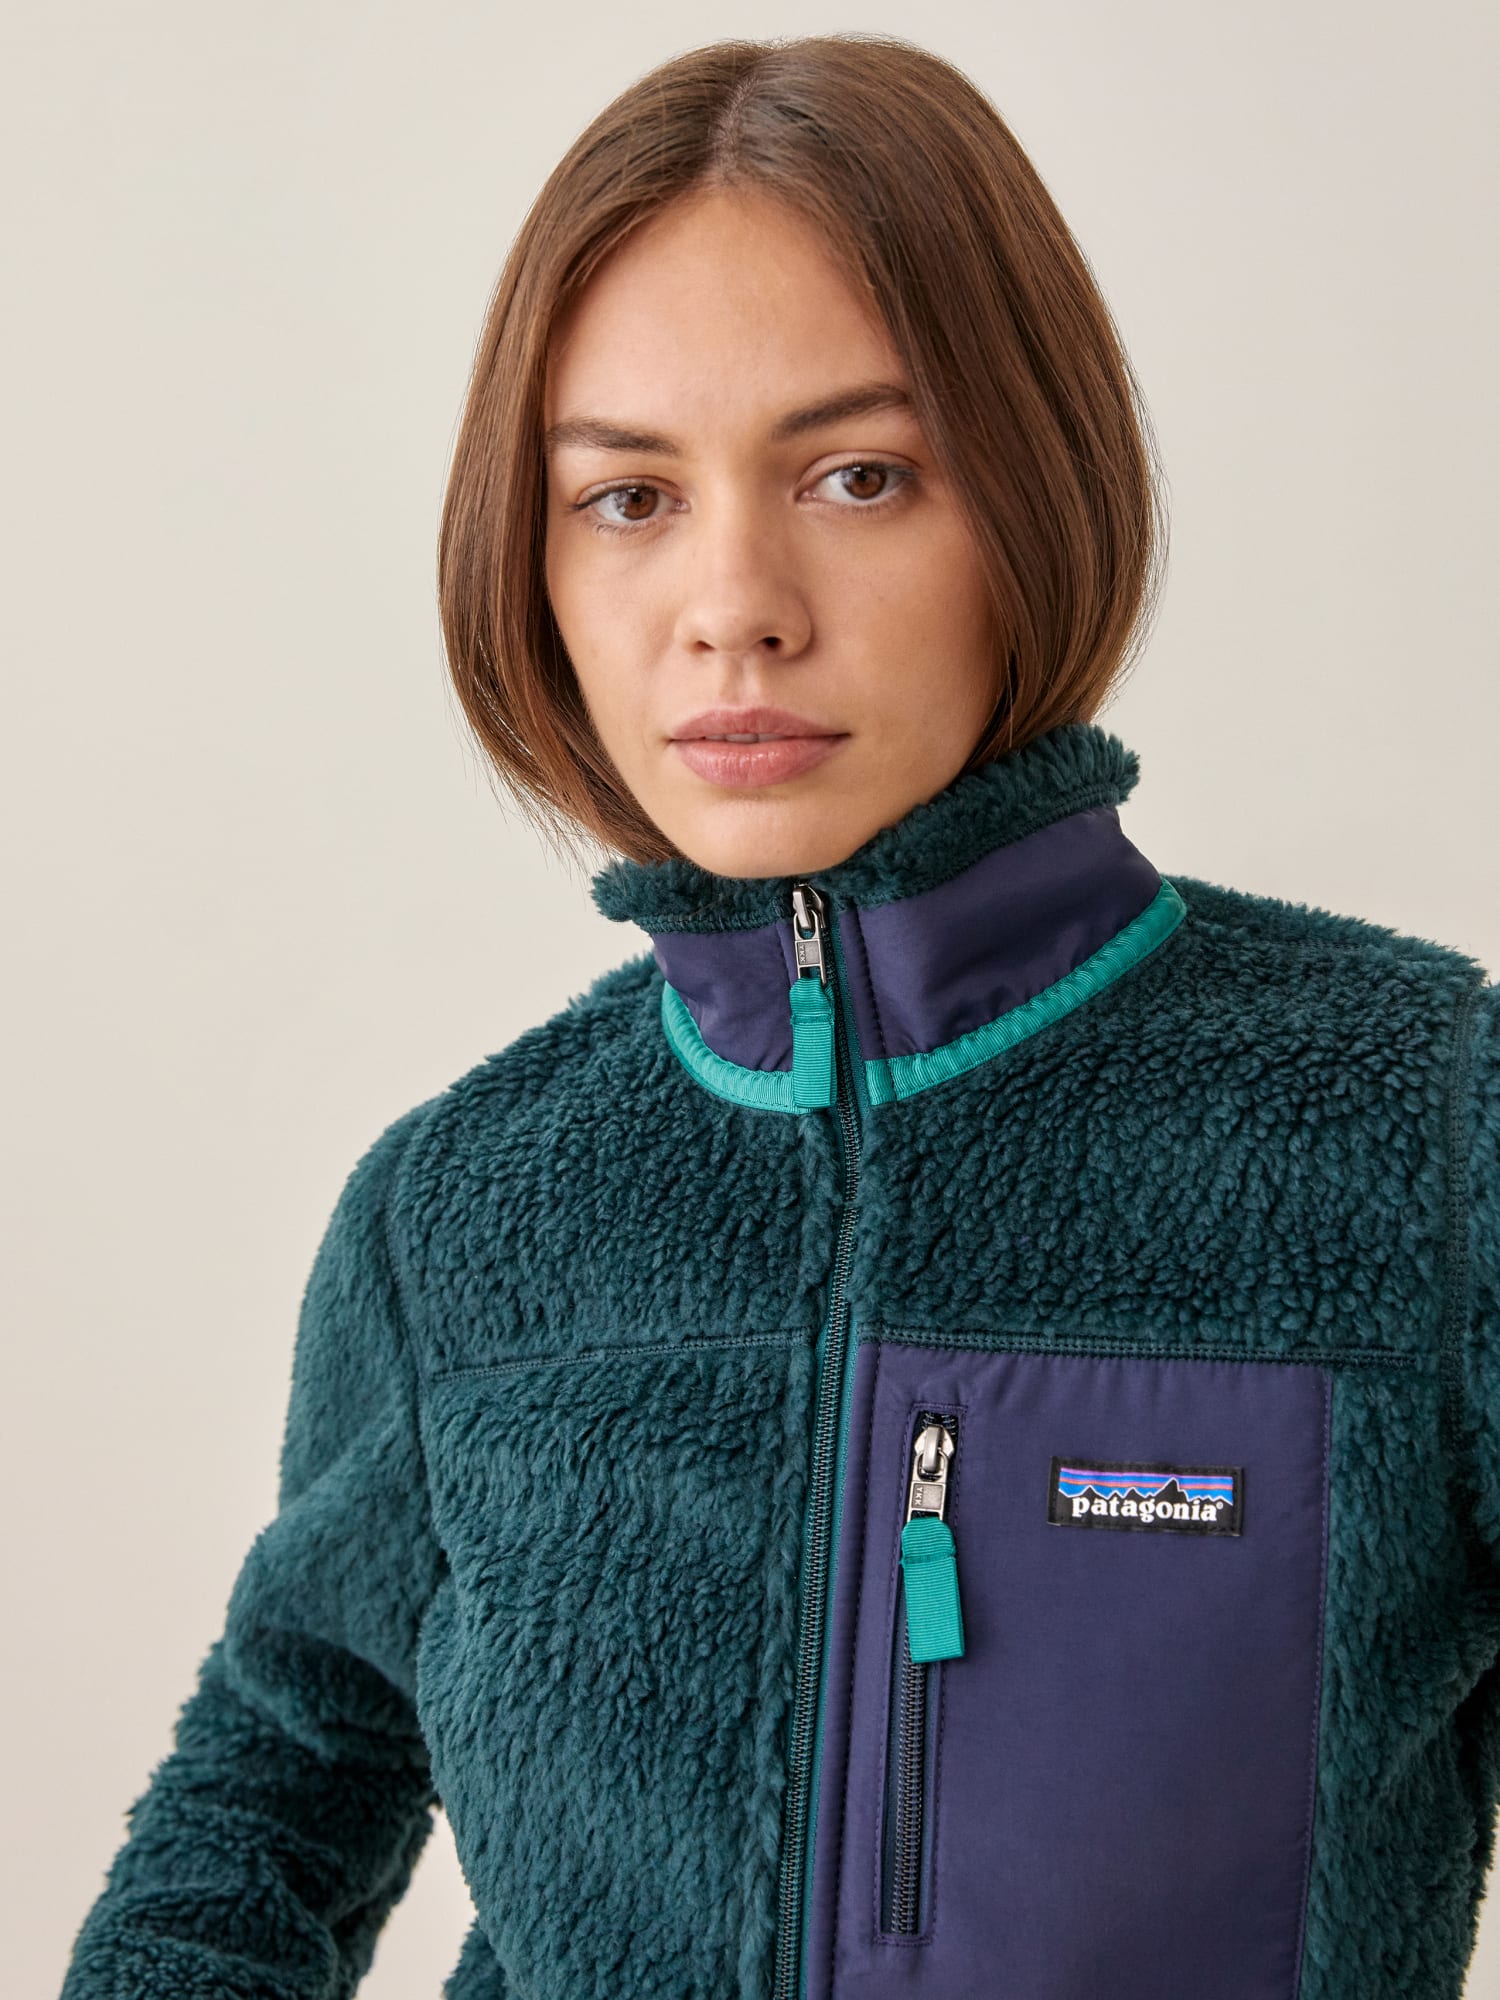 サイズ patagonia Patagonia retro x jacket natural XS 新品の通販 by taka's shop ...